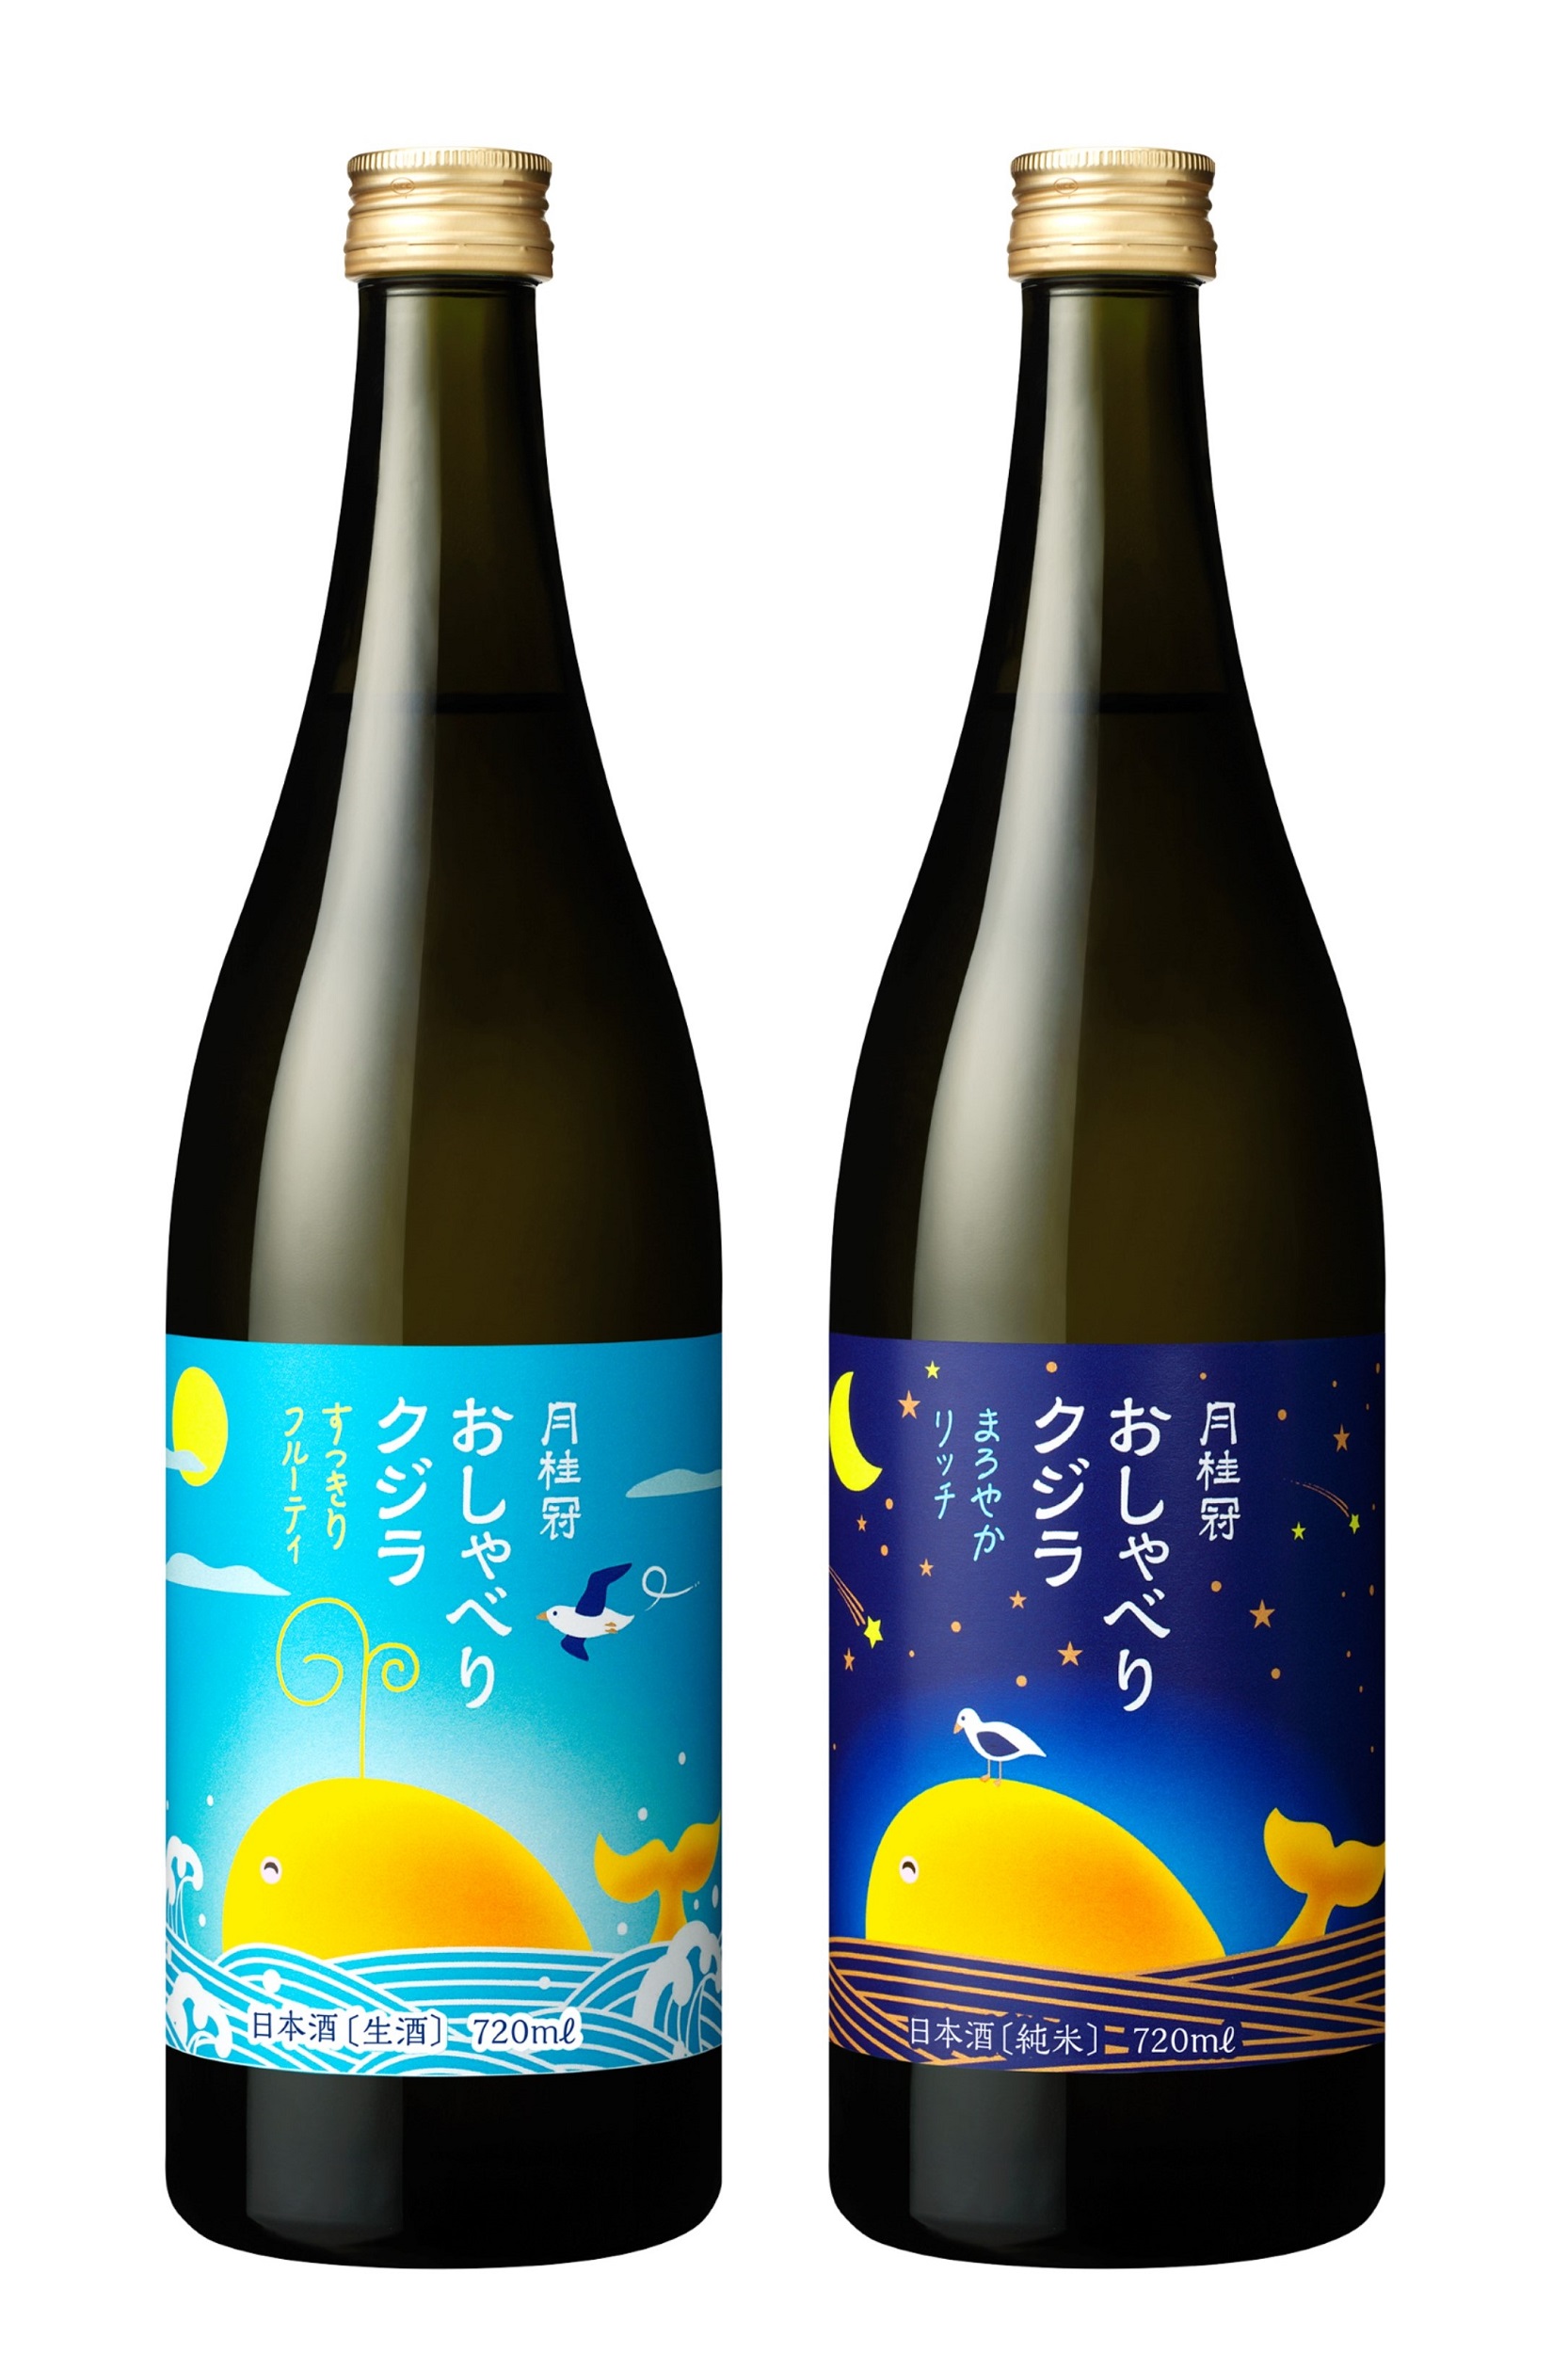 月桂冠 おしゃべりクジラ ２種 新発売 絵本の表紙のようなラベルの手軽な日本酒 月桂冠株式会社のプレスリリース